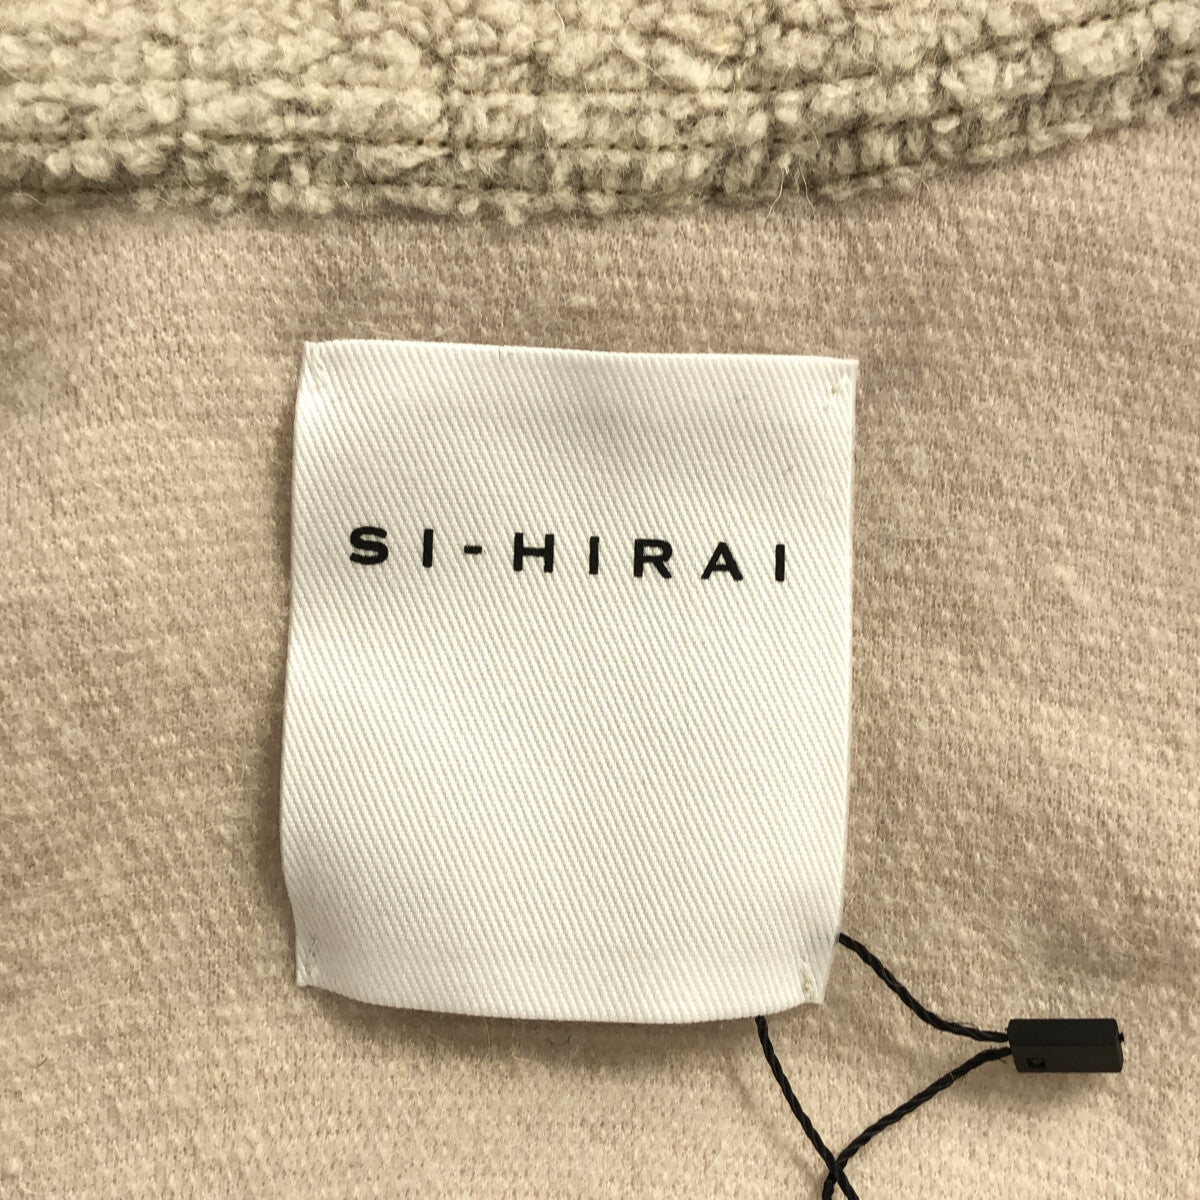 SI-HIRAI / スーヒライ | ウール ローブ ジャケット | 38 |